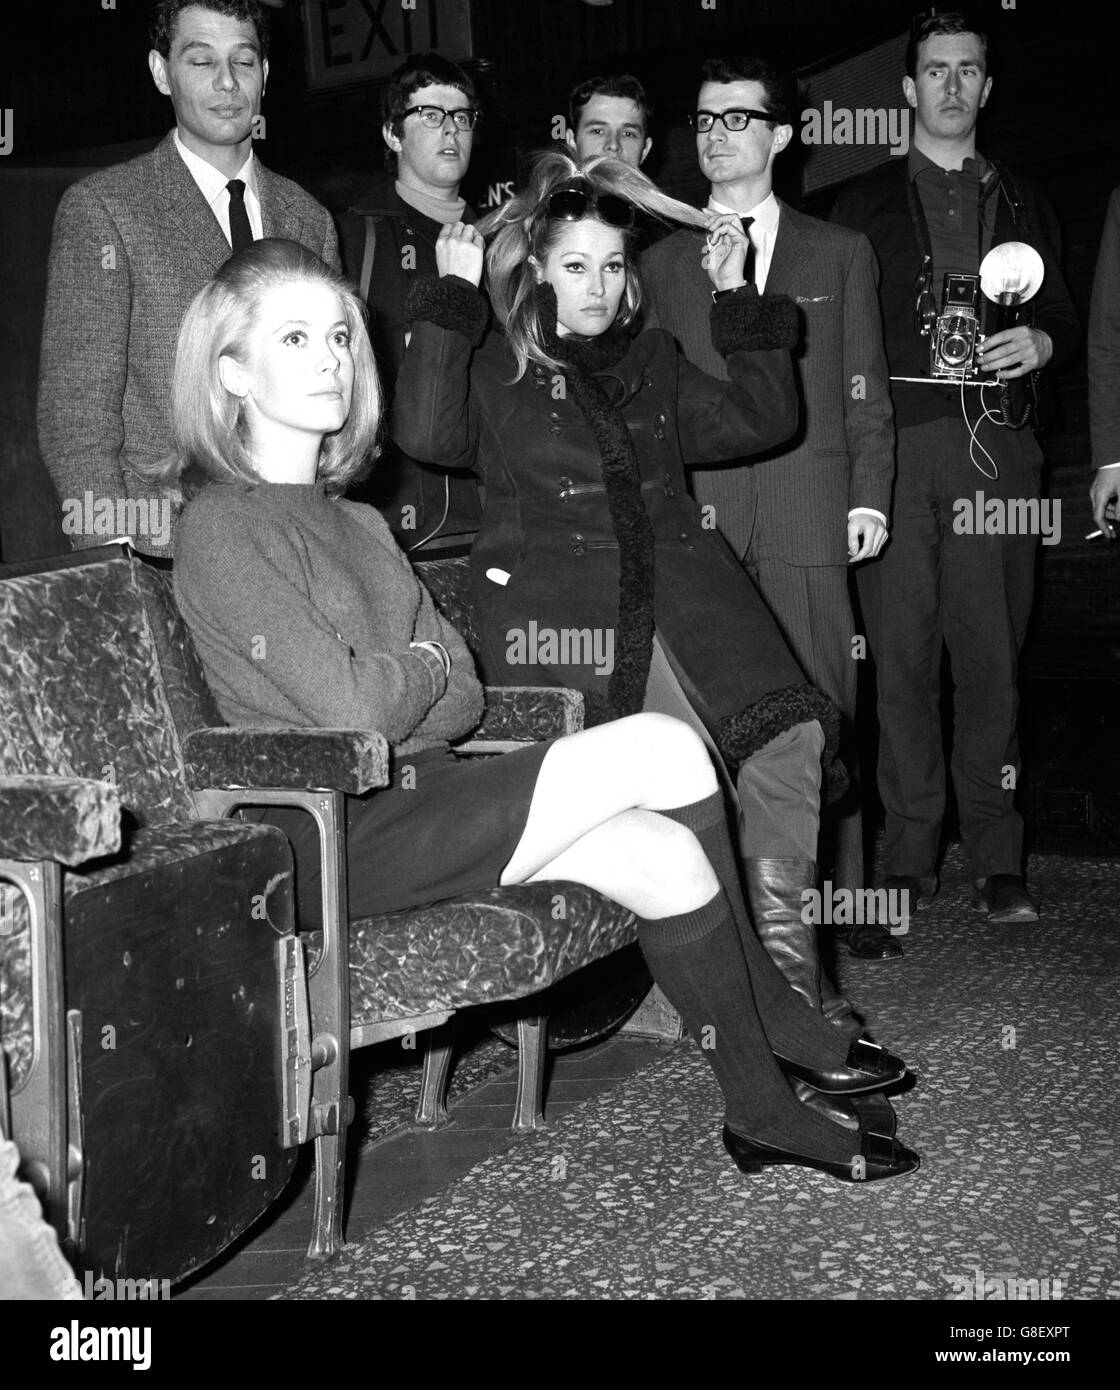 Ursula Andress (à droite) attend avec Catherine Deneuve leur tour pour répéter à l'Odeon, Leicester Square, pour le spectacle de demain des stars au Royal film Performance. Le film à montrer à la Reine sera né libre. Banque D'Images